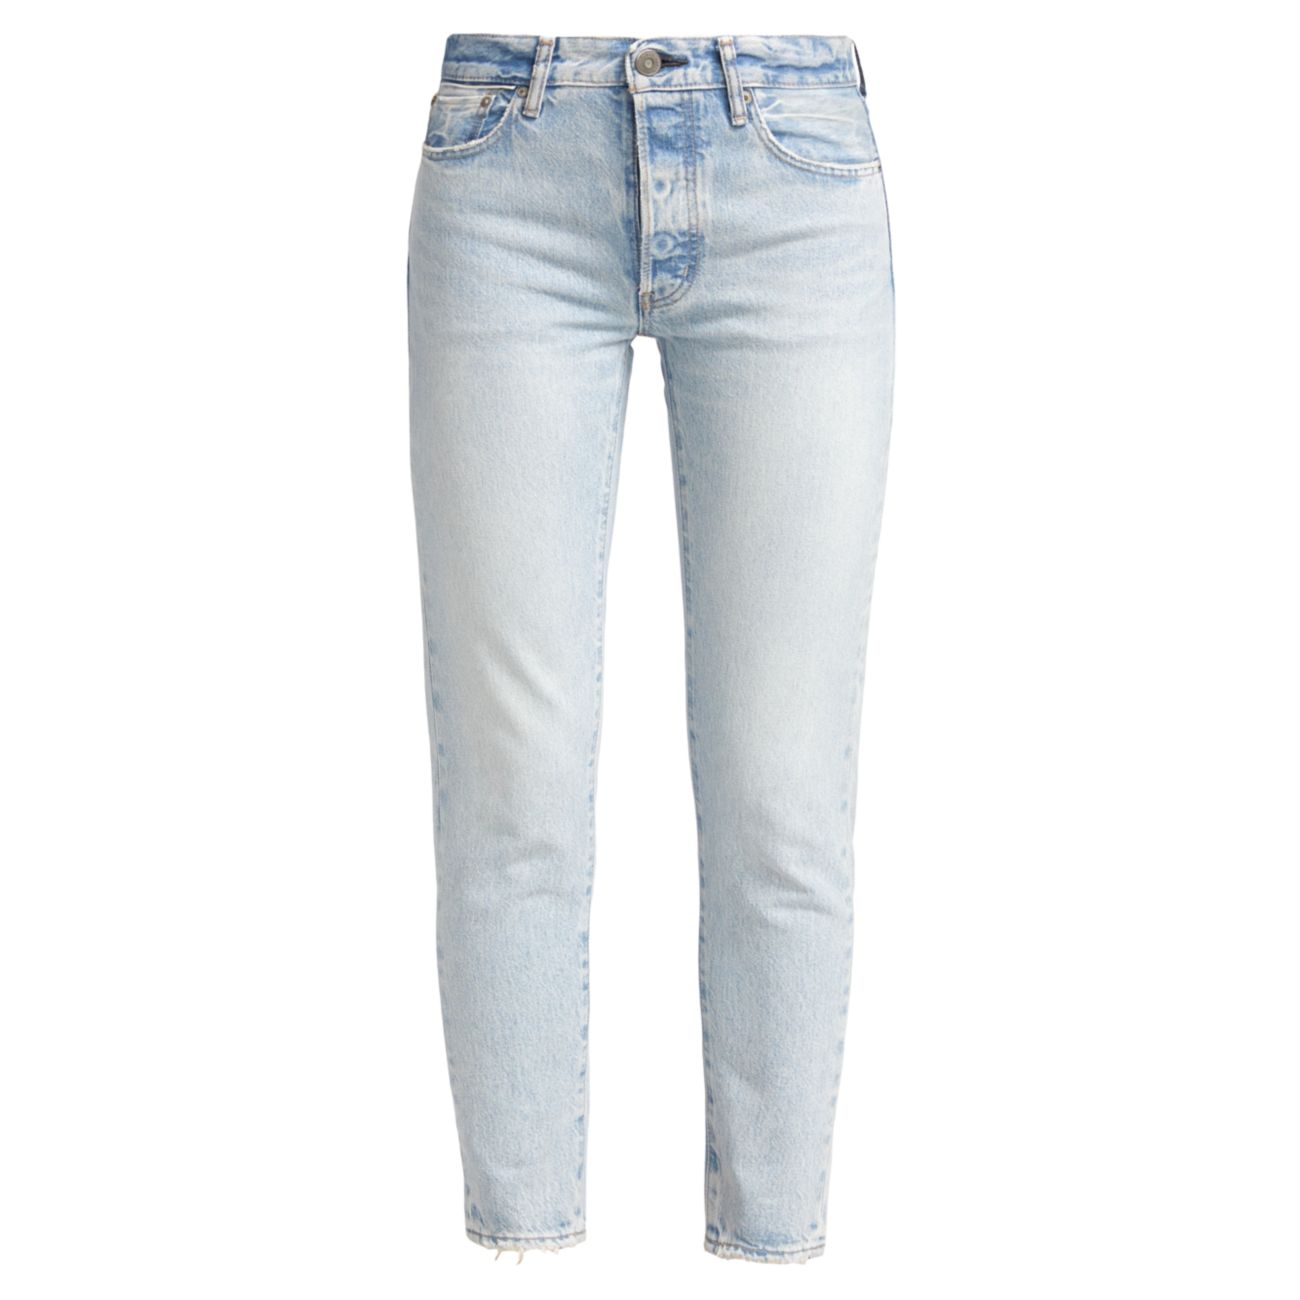 Укороченные узкие джинсы темно-синего цвета с низкой посадкой Moussy Vintage